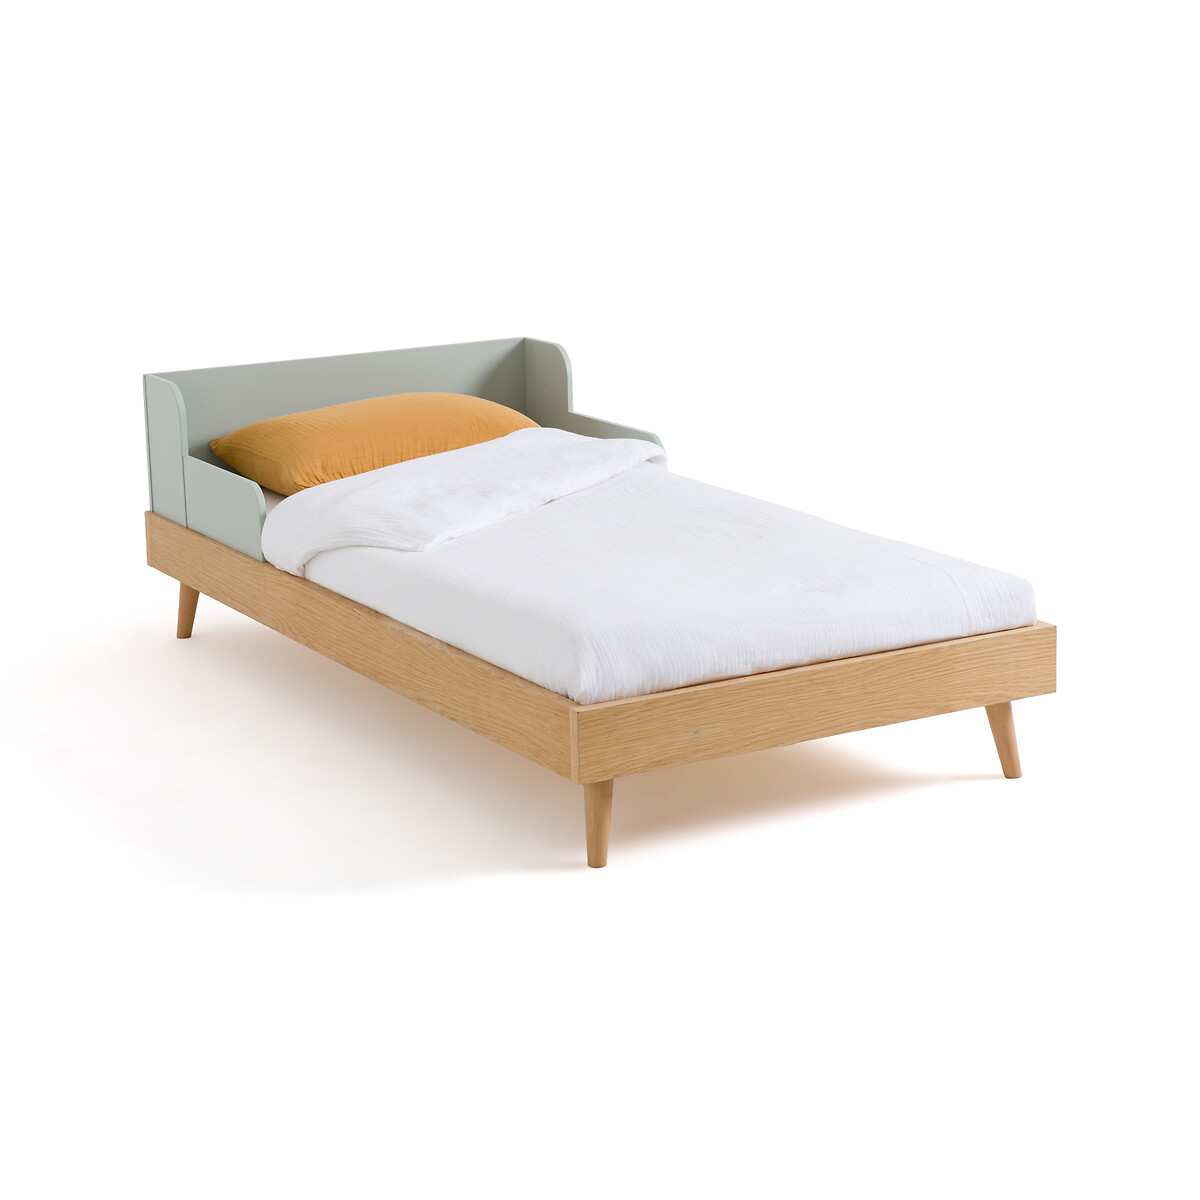 Кровать детская с кроватным основанием Augusto 90 x 190 см каштановый двухъярусная кровать из шпона дуба с пружинным блоком alceste 90 x 190 см каштановый